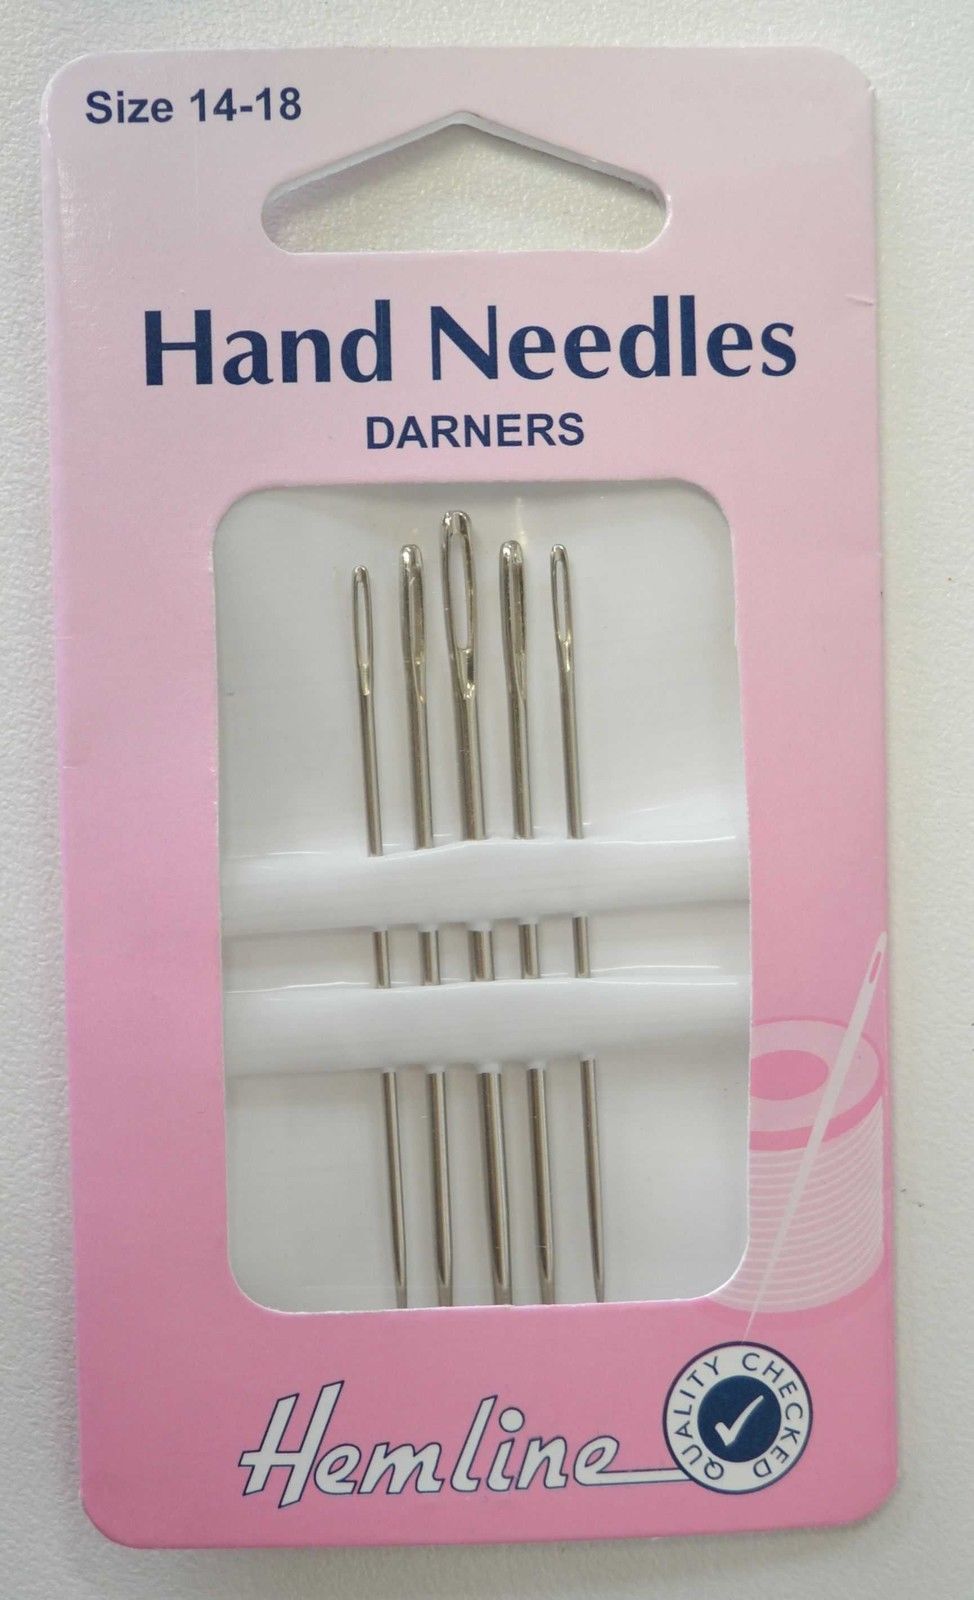 Hemline Hand Needles Darners, Sizes 14-18, Pack of 5 Needles.